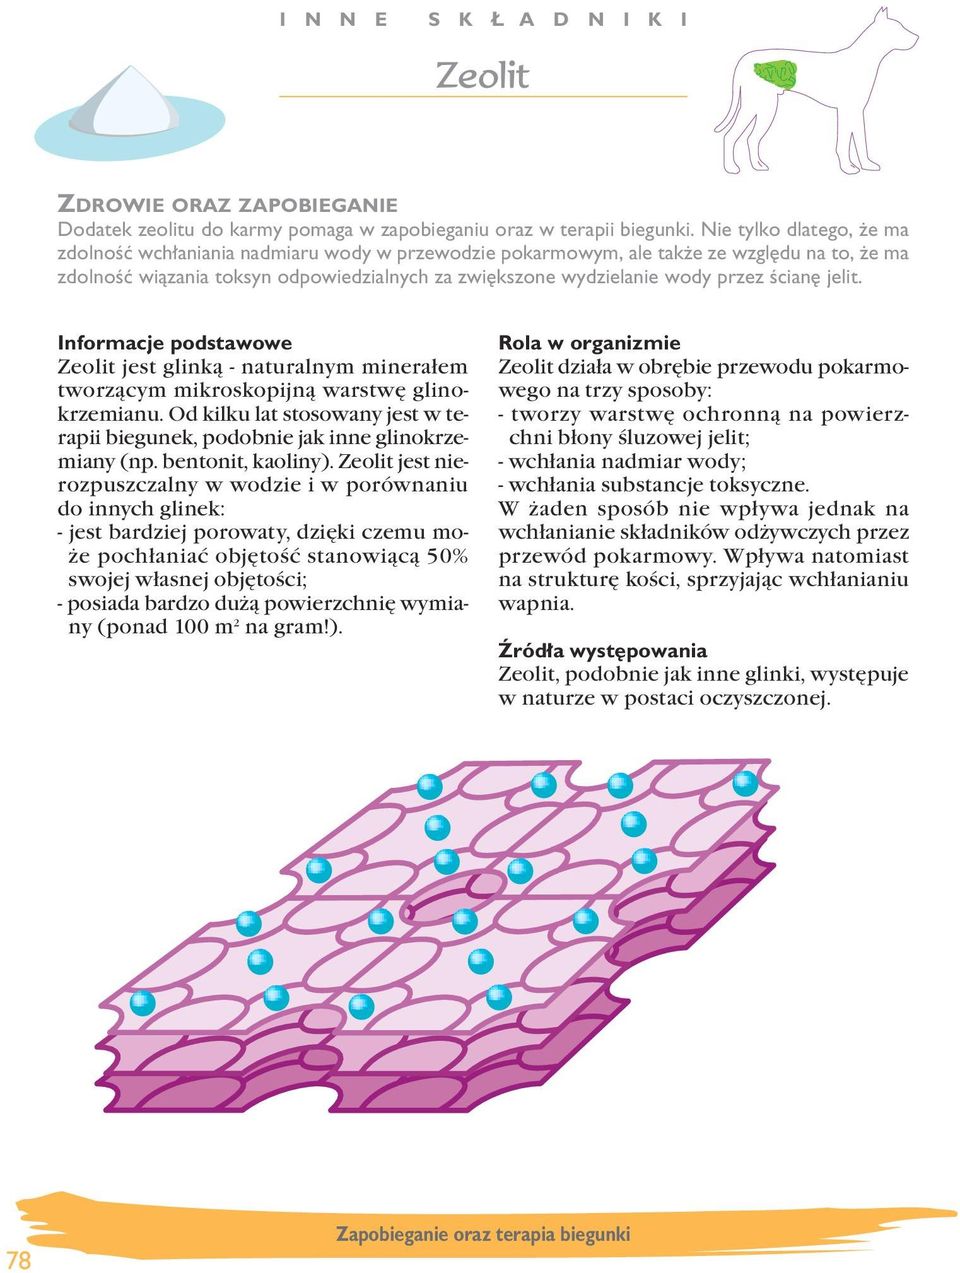 Êcian jelit. Zeolit jest glinką - naturalnym minerałem tworzącym mikroskopijną warstwę glinokrzemianu. d kilku lat stosowany jest w terapii biegunek, podobnie jak inne glinokrzemiany (np.